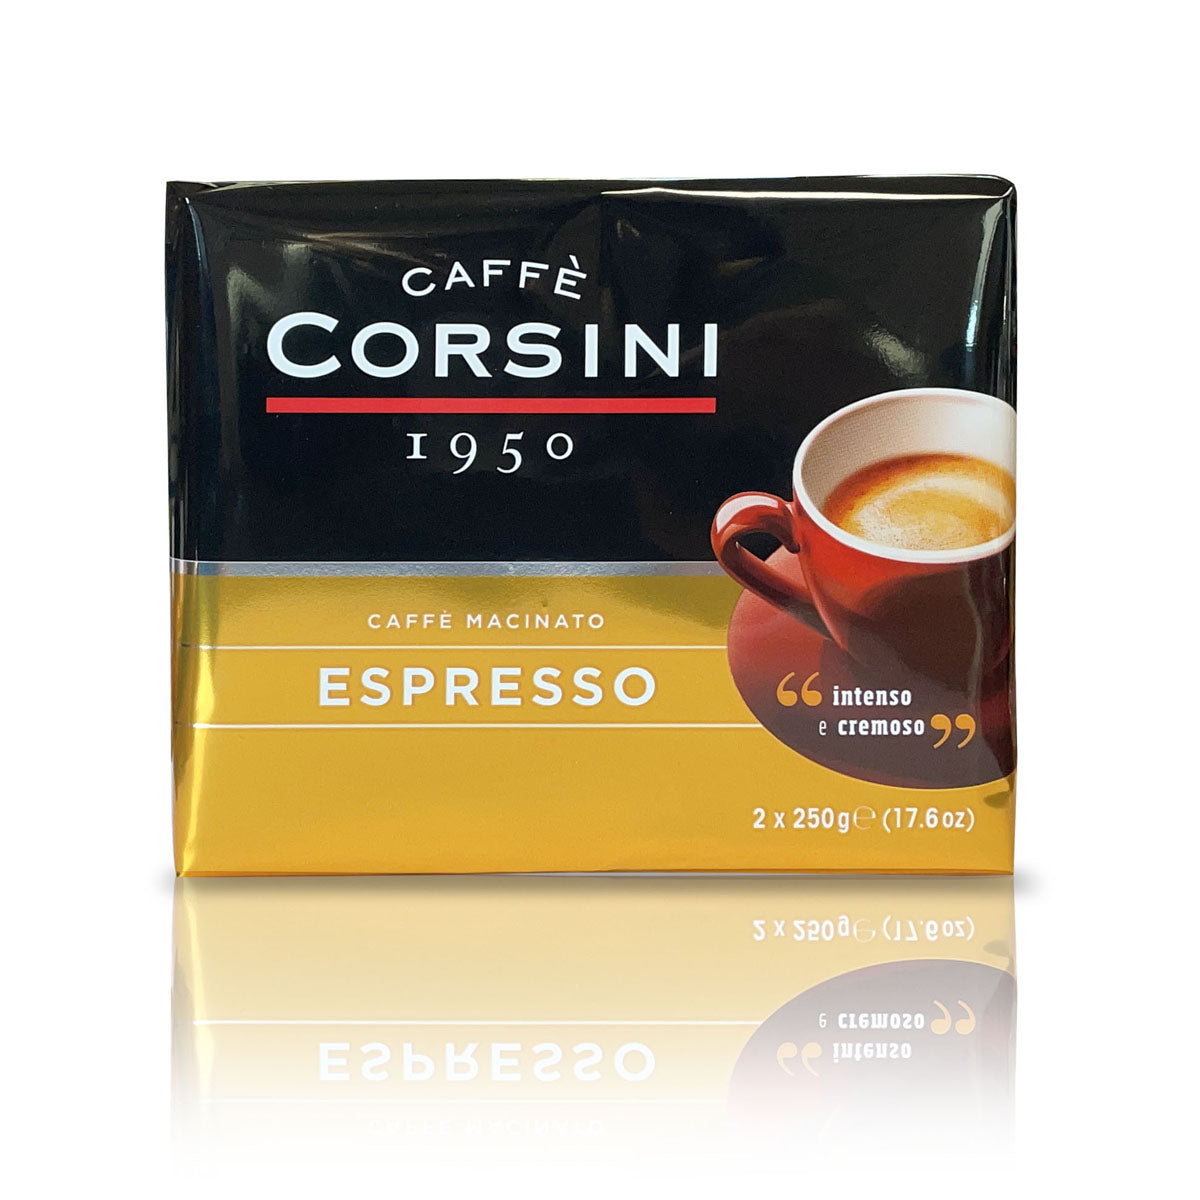 Caffè macinato per Espresso | Confezione con 2 pacchetti da 250g l'uno | Cartone con 10 confezioni